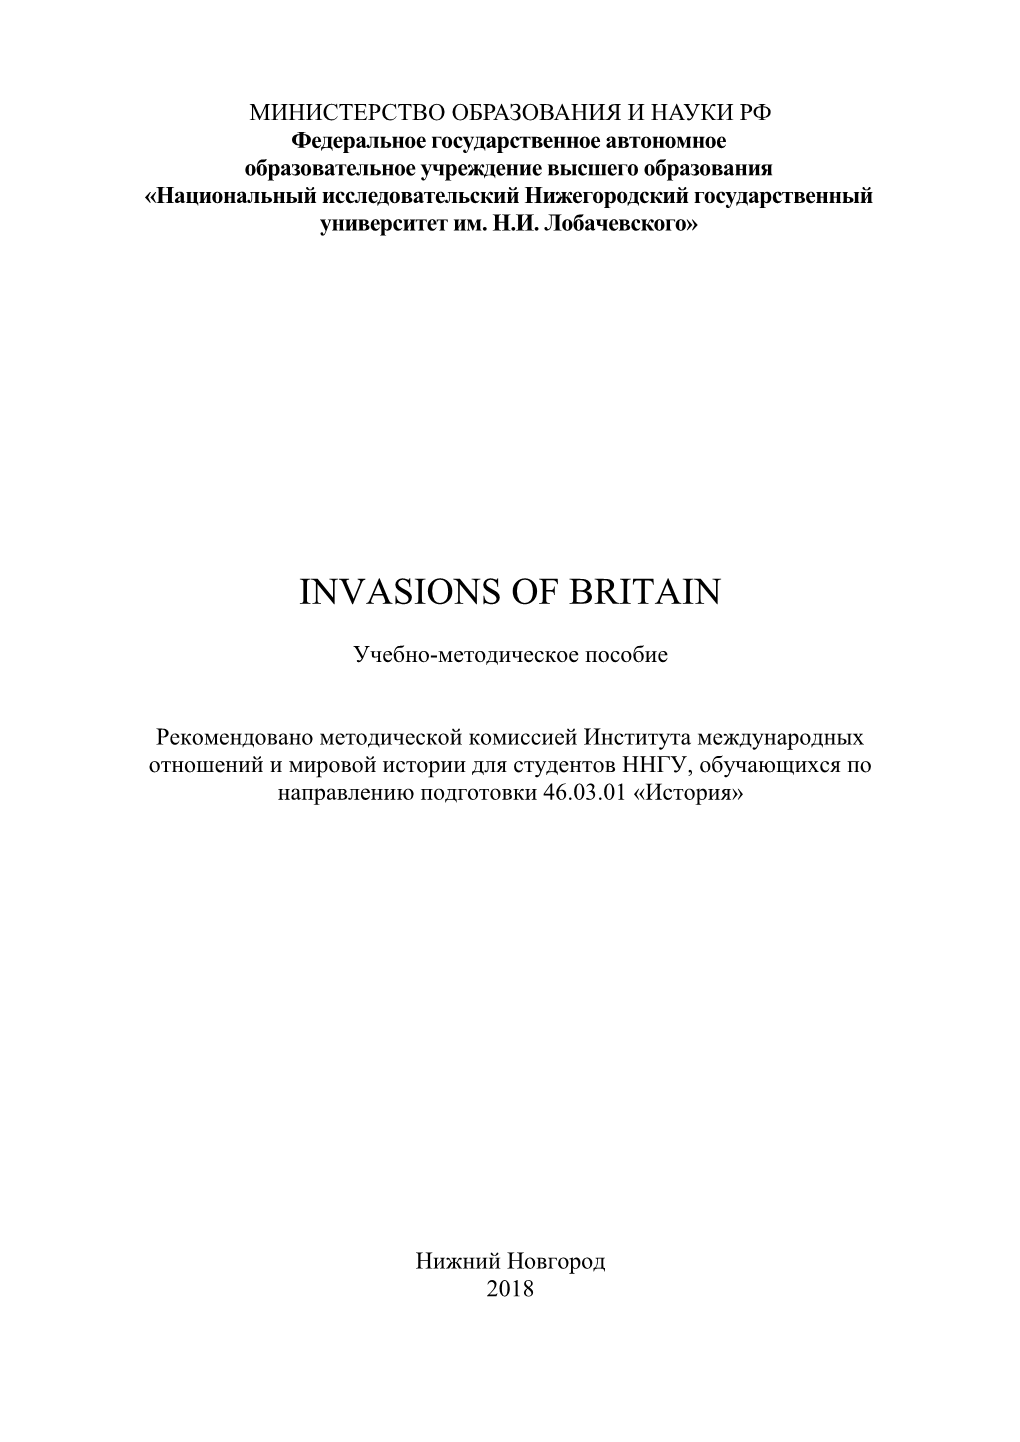 Invasions of Britain